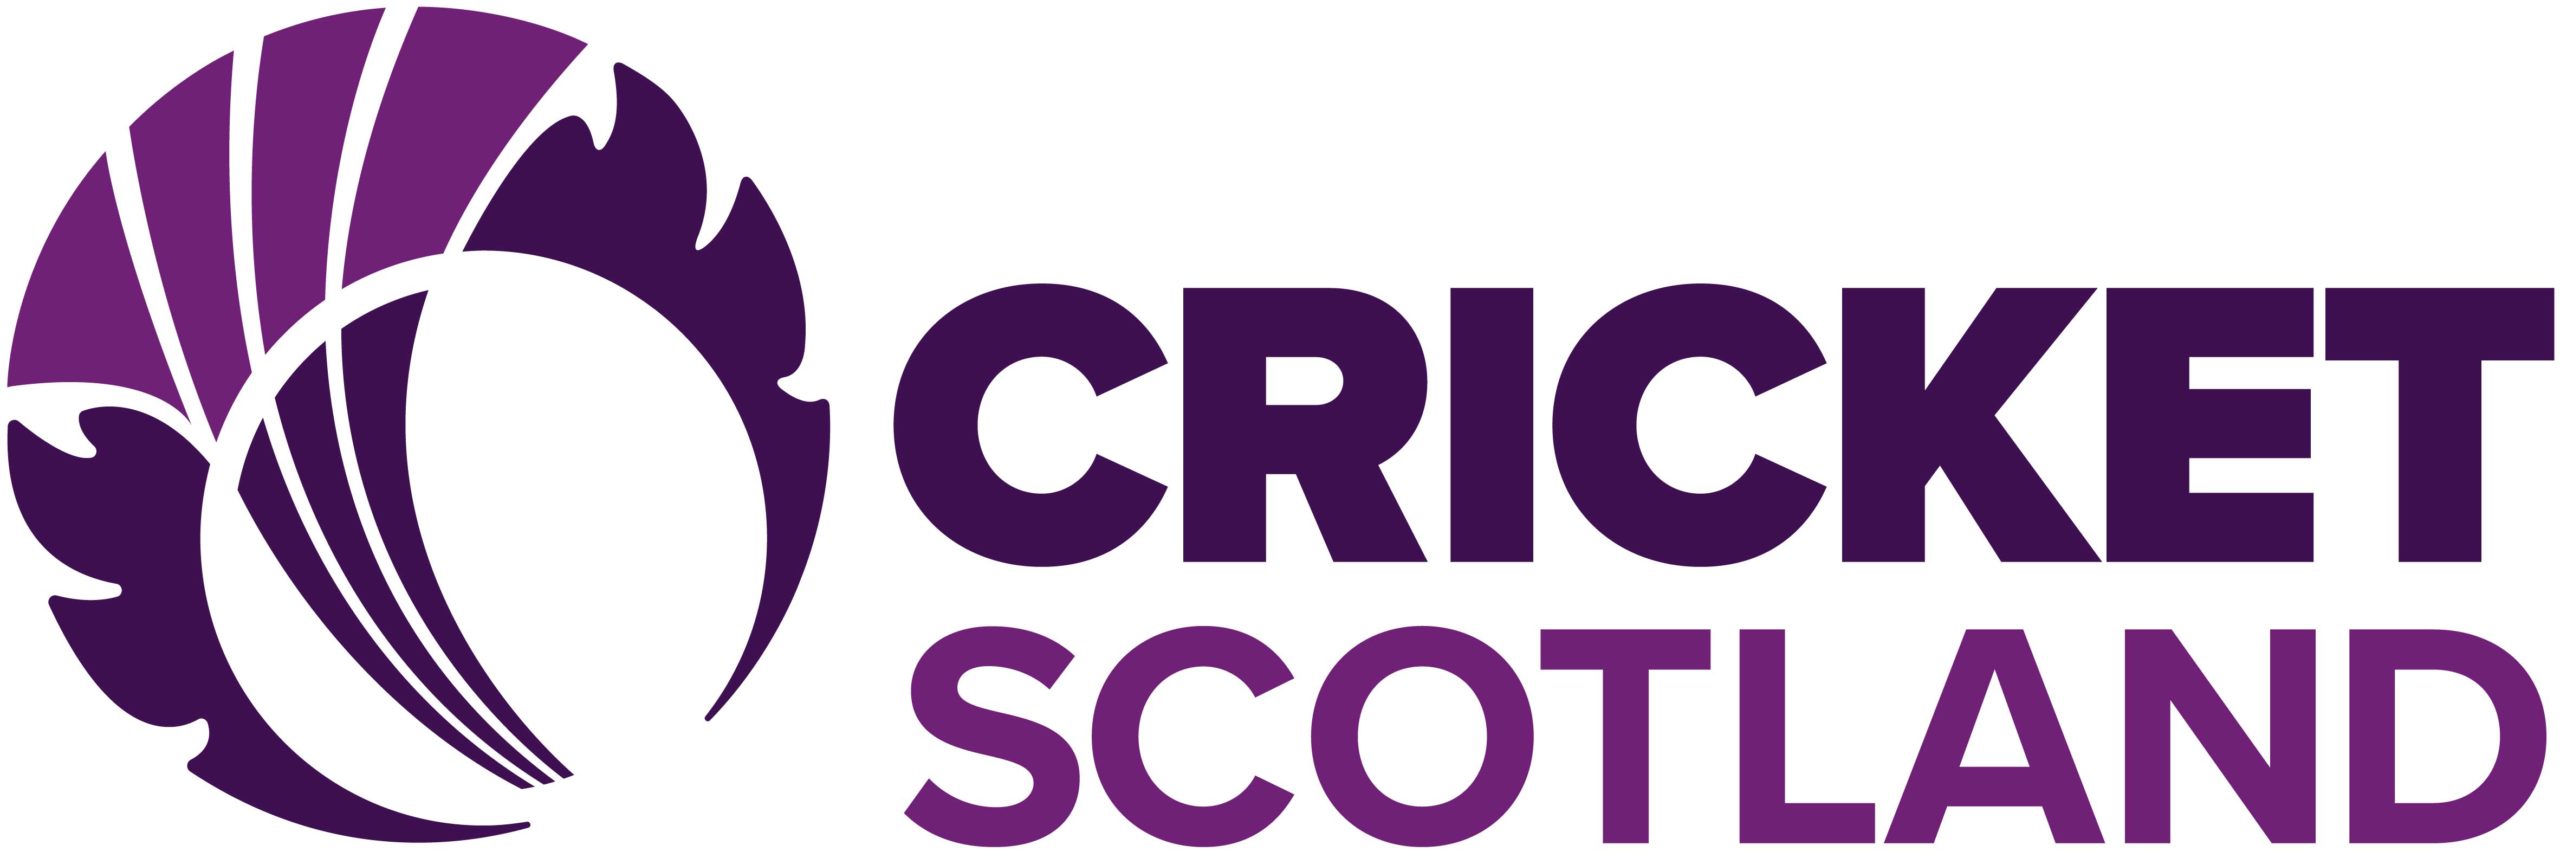 Statement from Cricket Scotland